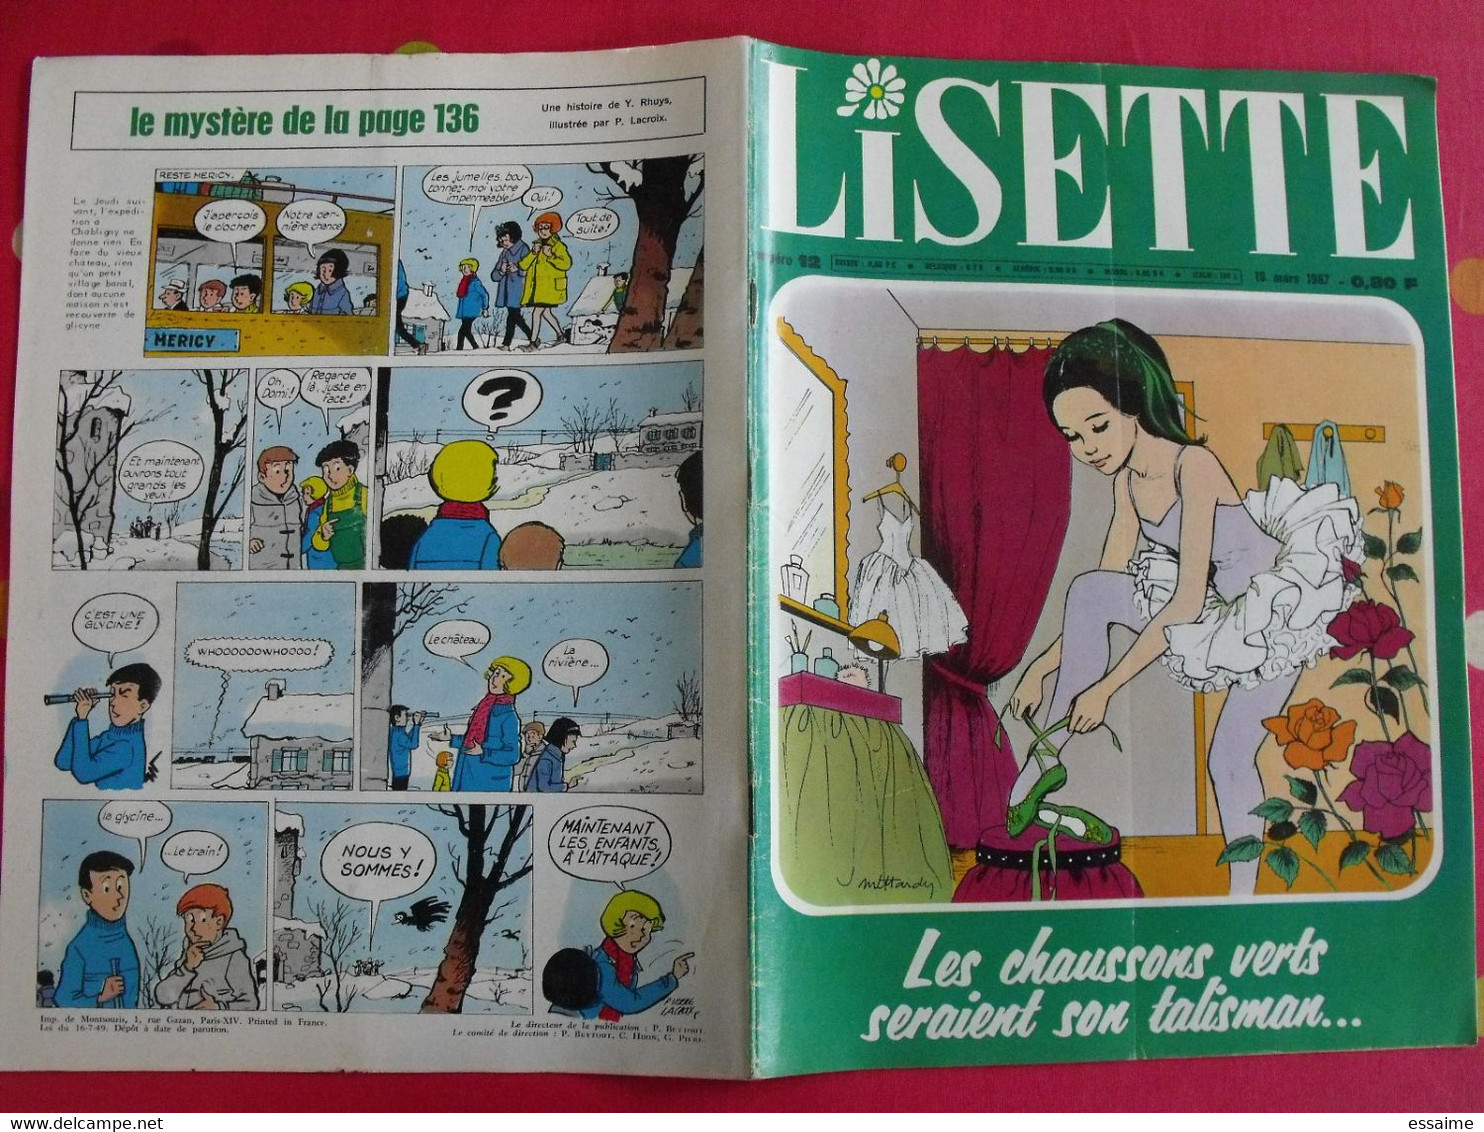 Lisette. 16 n° de 1967. lacroix lay tiky fusco francey marcello dufossé trubert dutronc. à redécouvrir G.H.